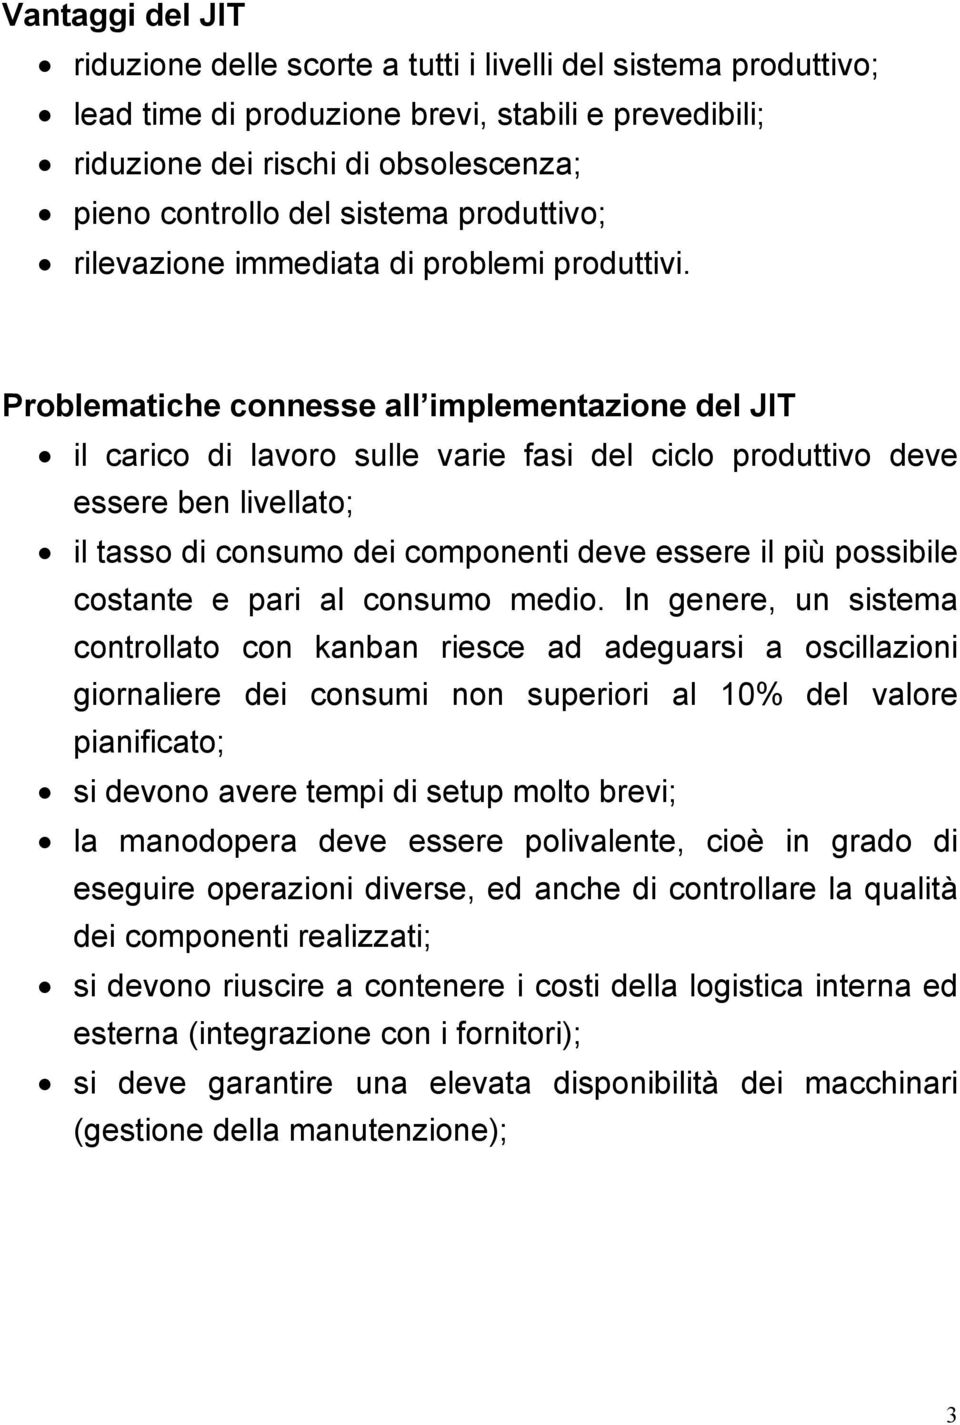 Problematiche connesse all implementazione del JIT il carico di lavoro sulle varie fasi del ciclo produttivo deve essere ben livellato; il tasso di consumo dei componenti deve essere il più possibile